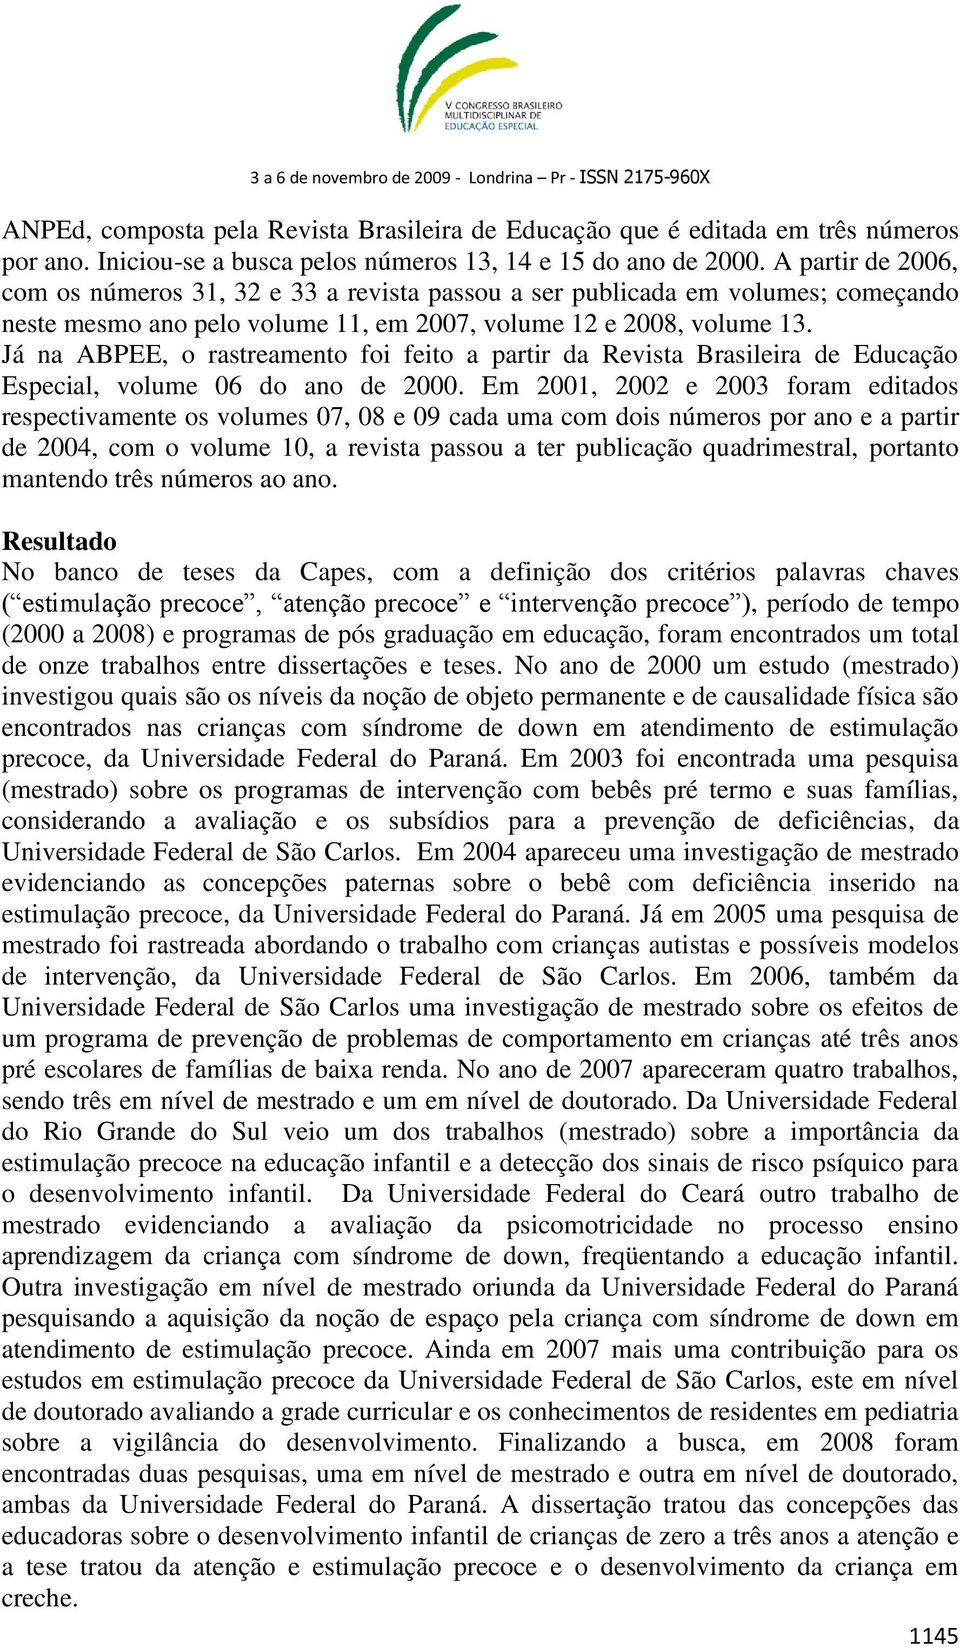 Já na ABPEE, o rastreamento foi feito a partir da Revista Brasileira de Educação Especial, volume 06 do ano de 2000.